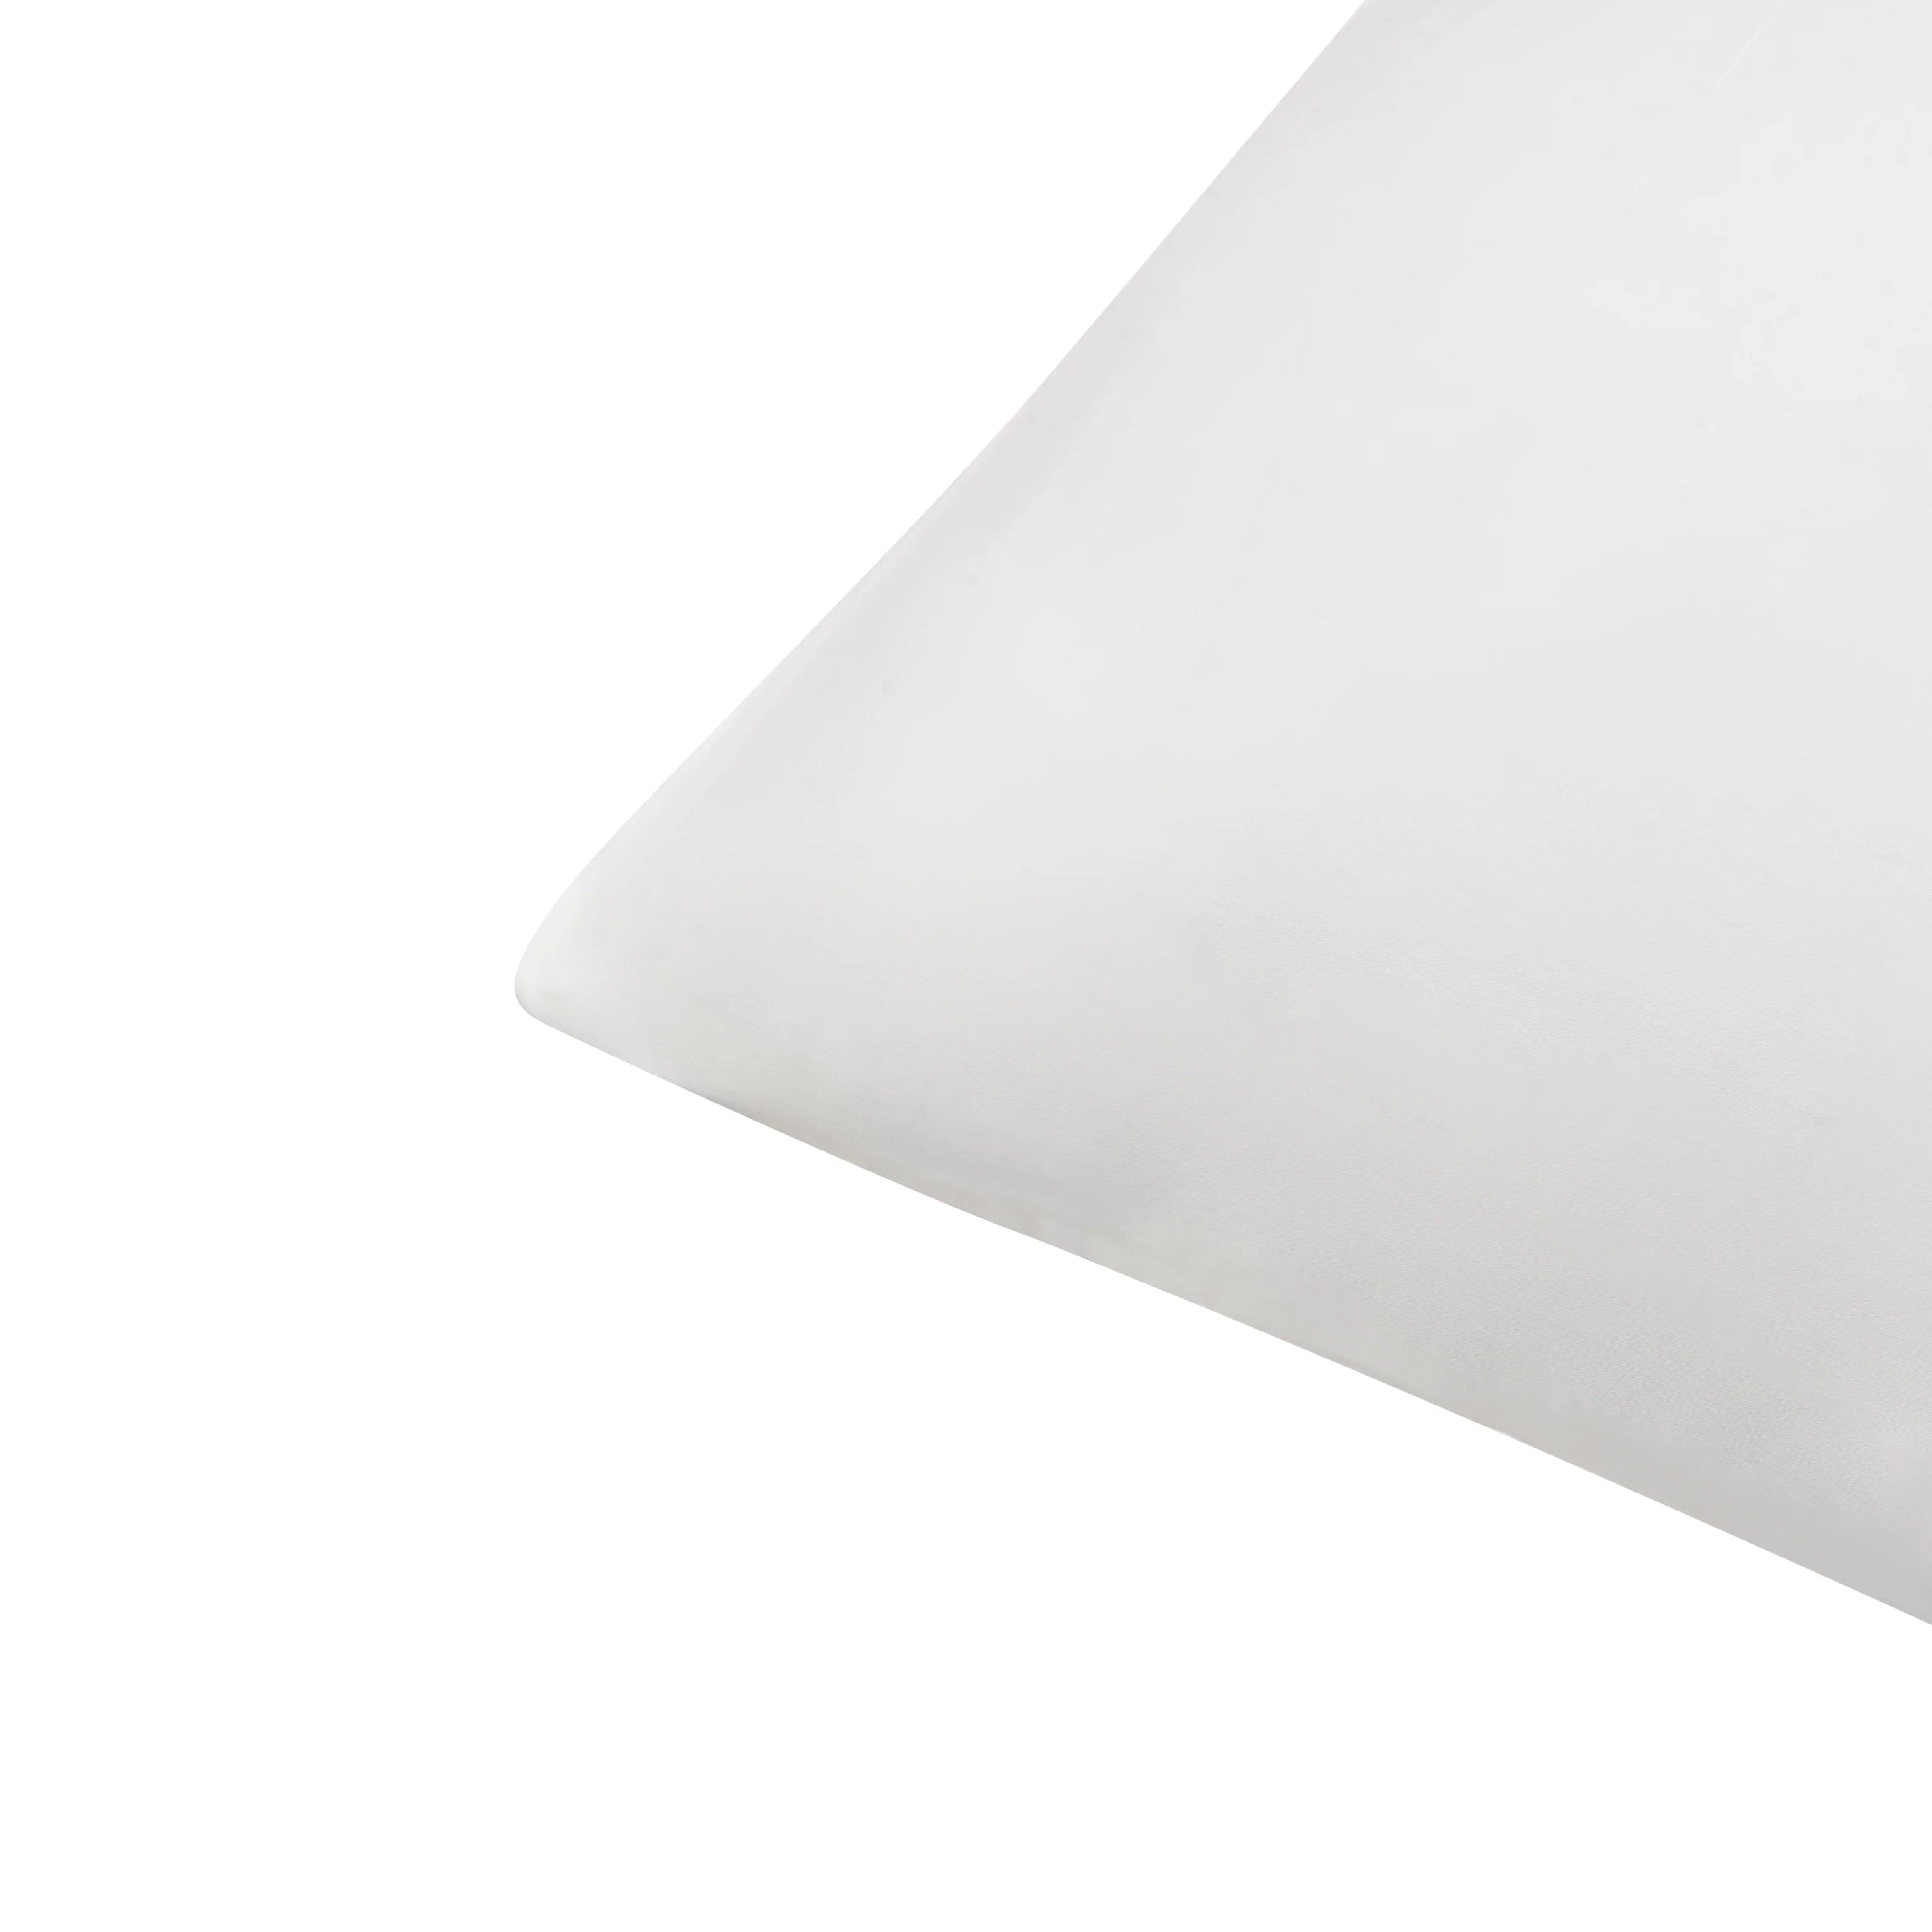 Eucalyptus Silk Pillowcase Pair in White (Best Seller)